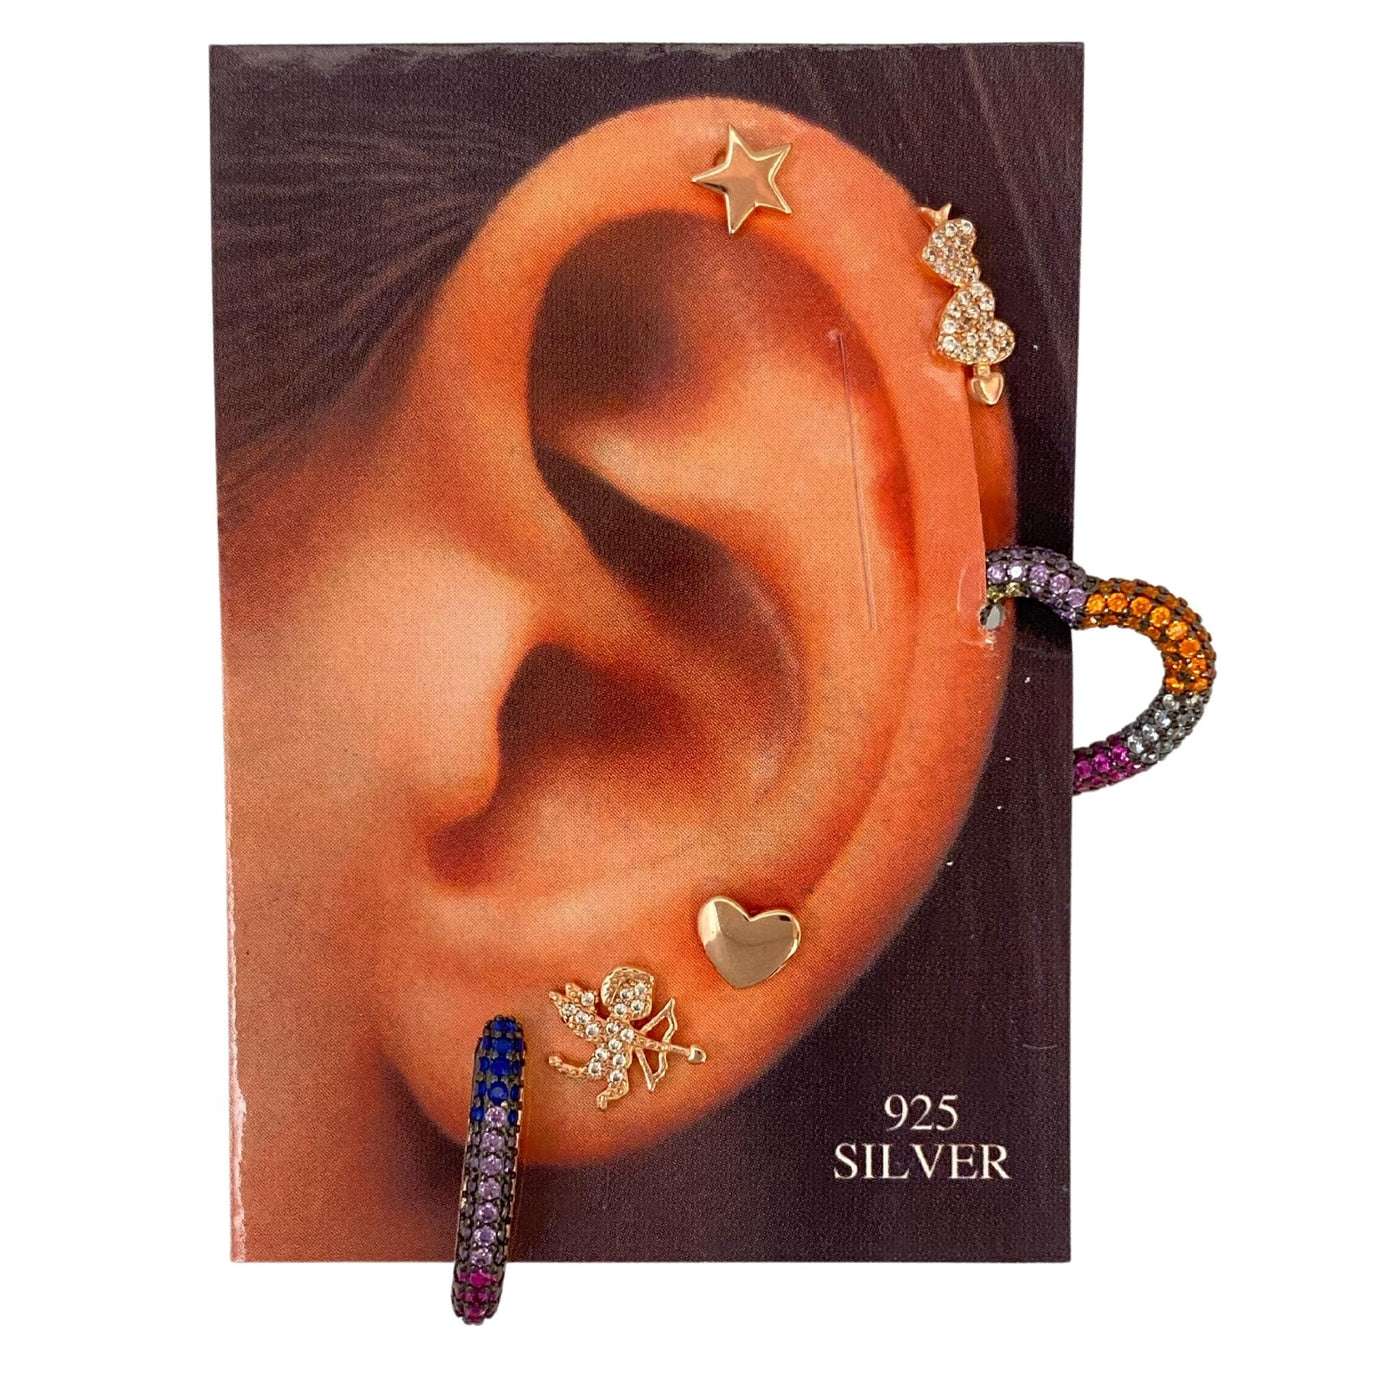 Silver stud earrings set